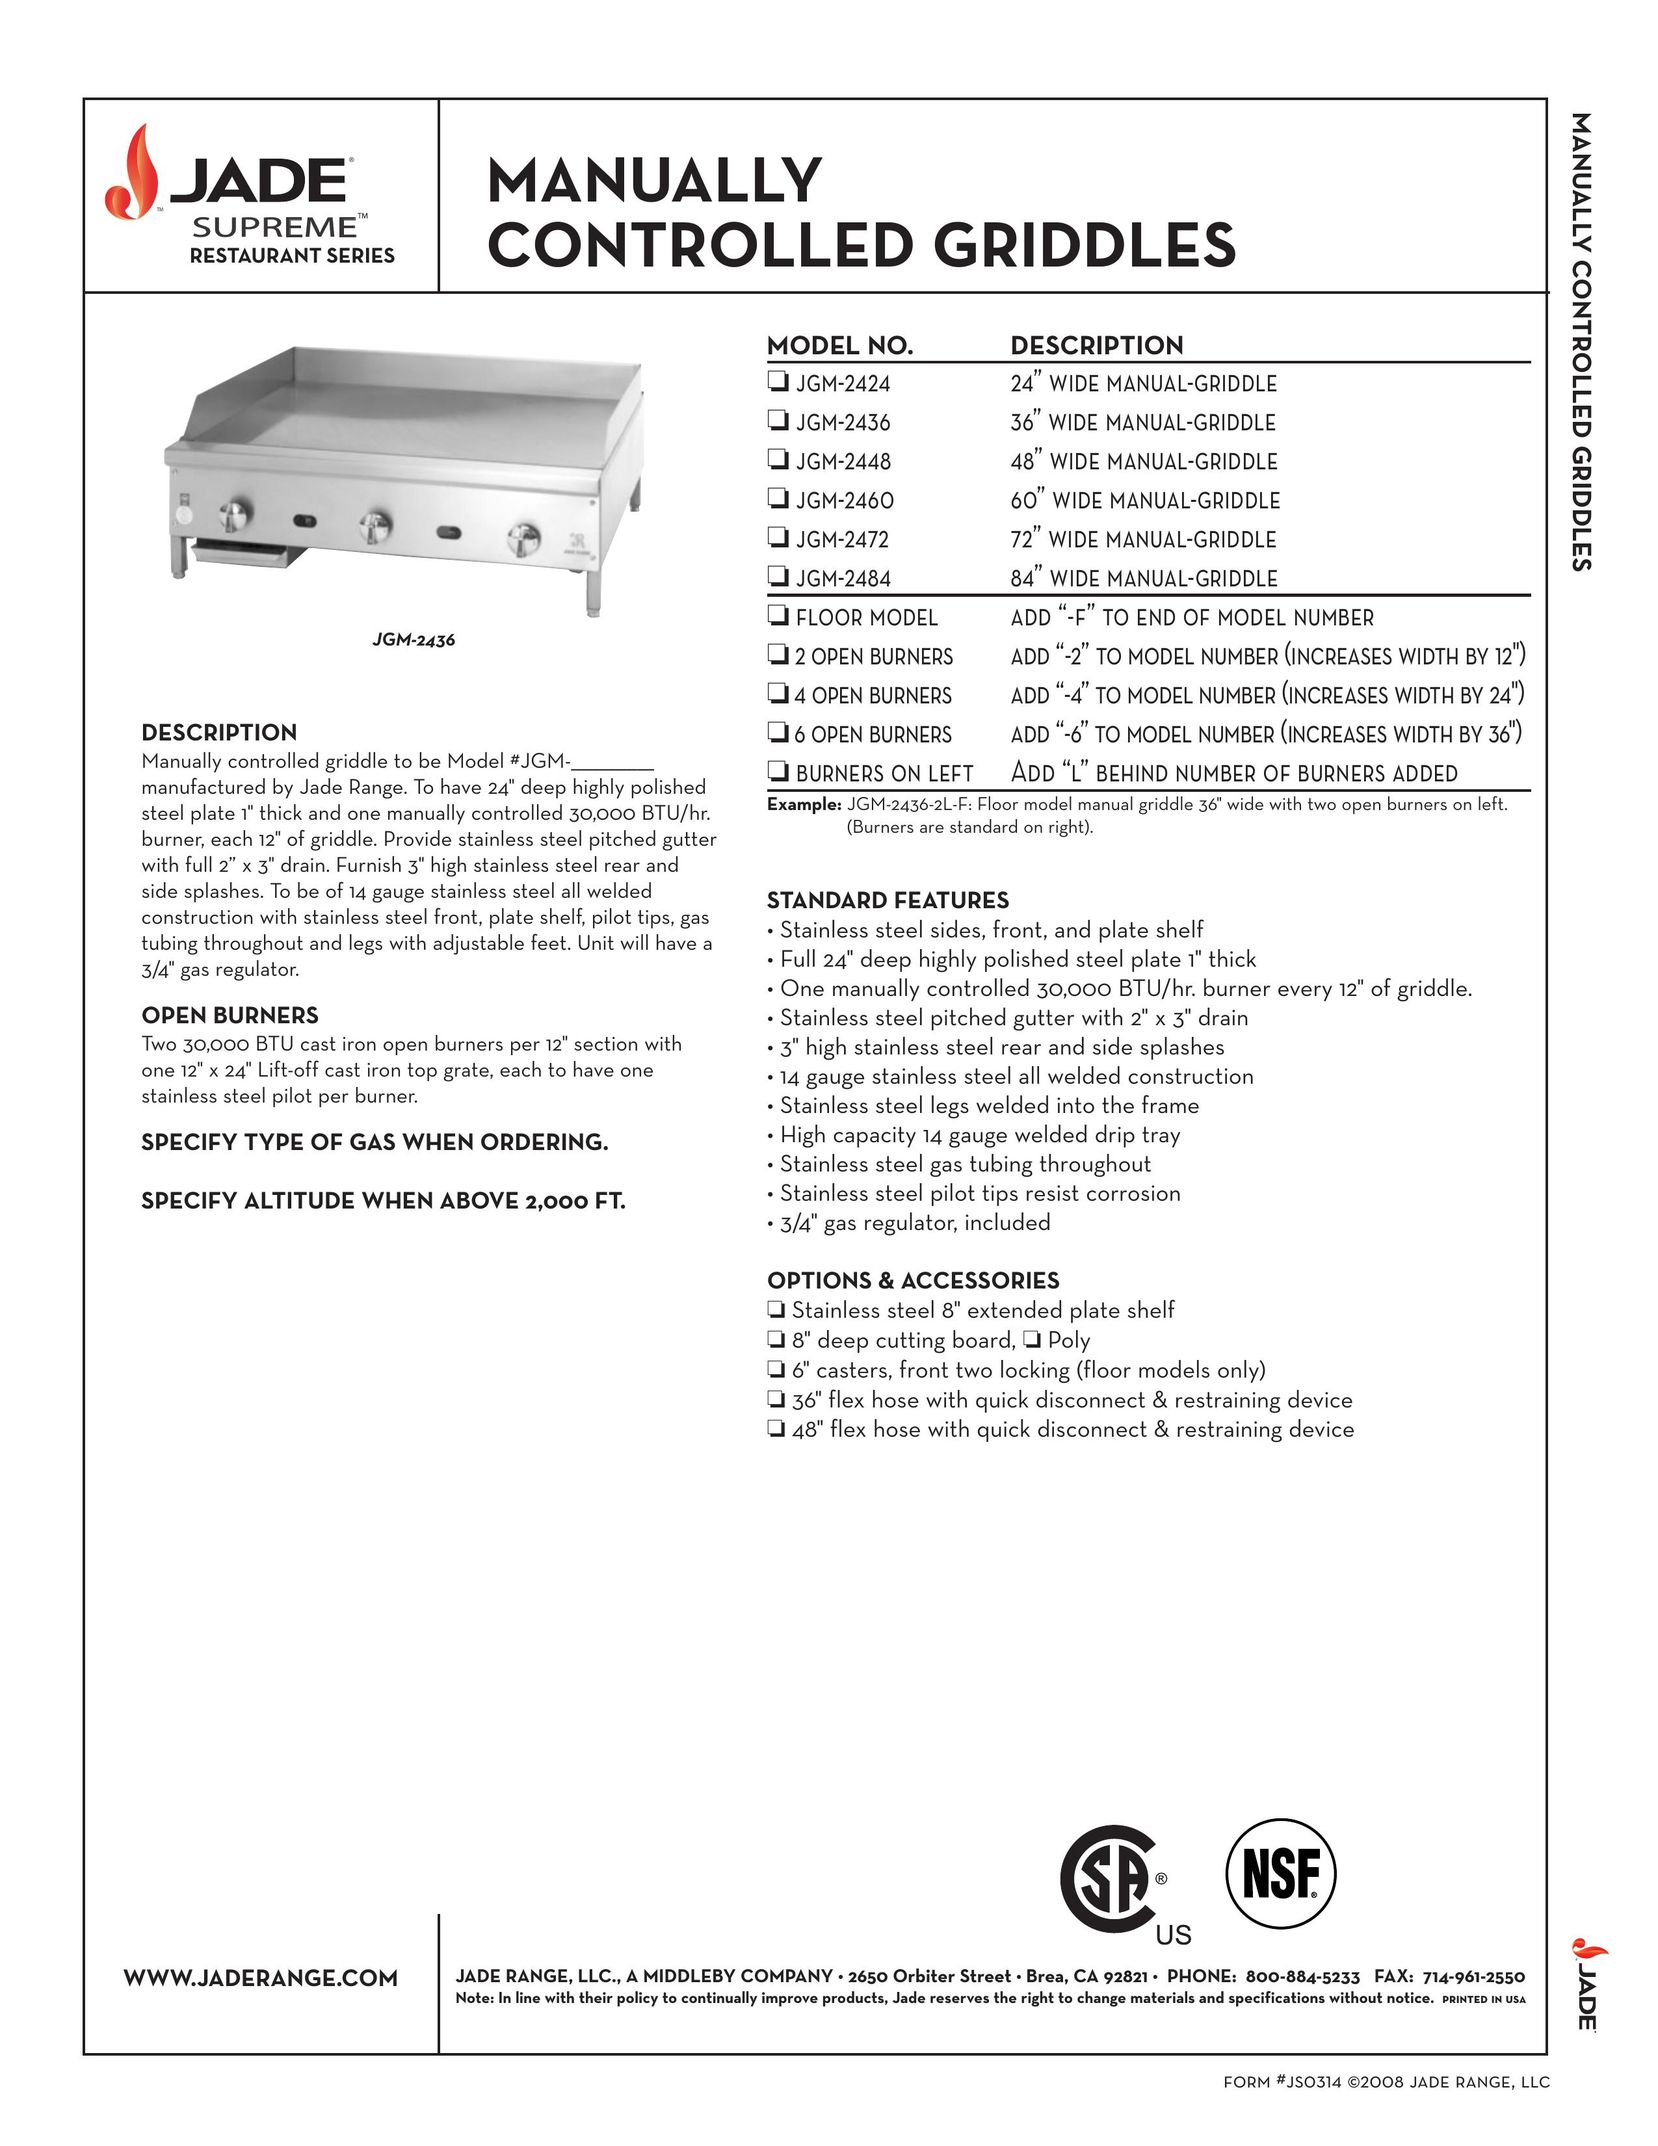 Jade Range JGM-2436 Griddle User Manual